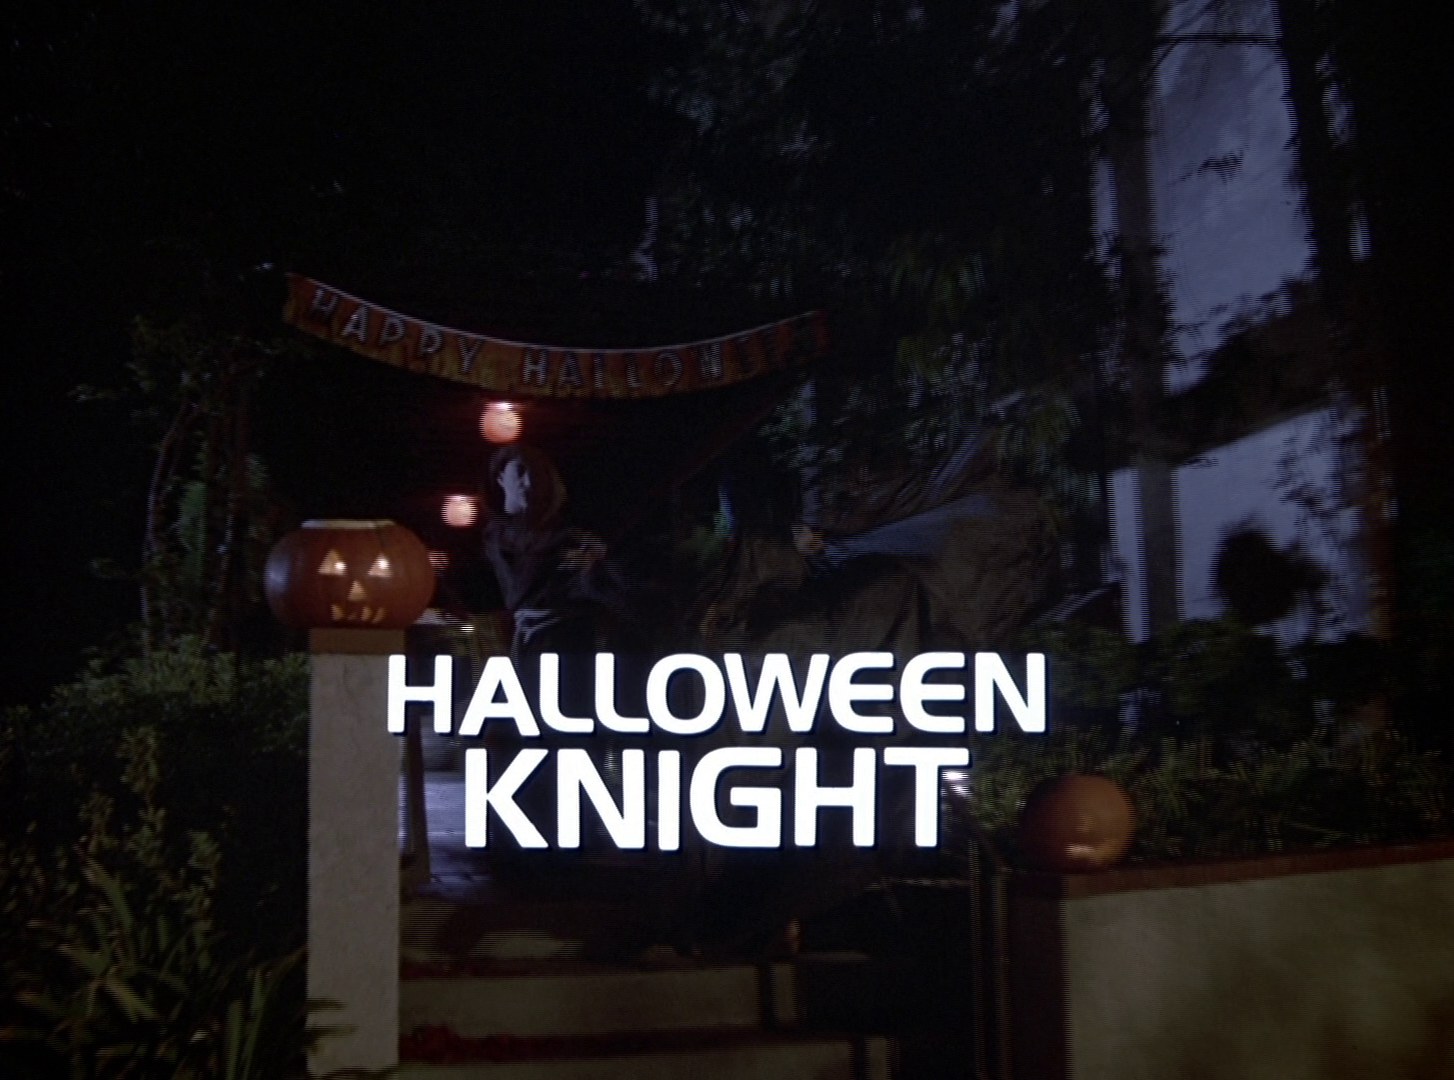 Knight Rider Season 3 - Episode 46 - Halloween Knight - Photo 1